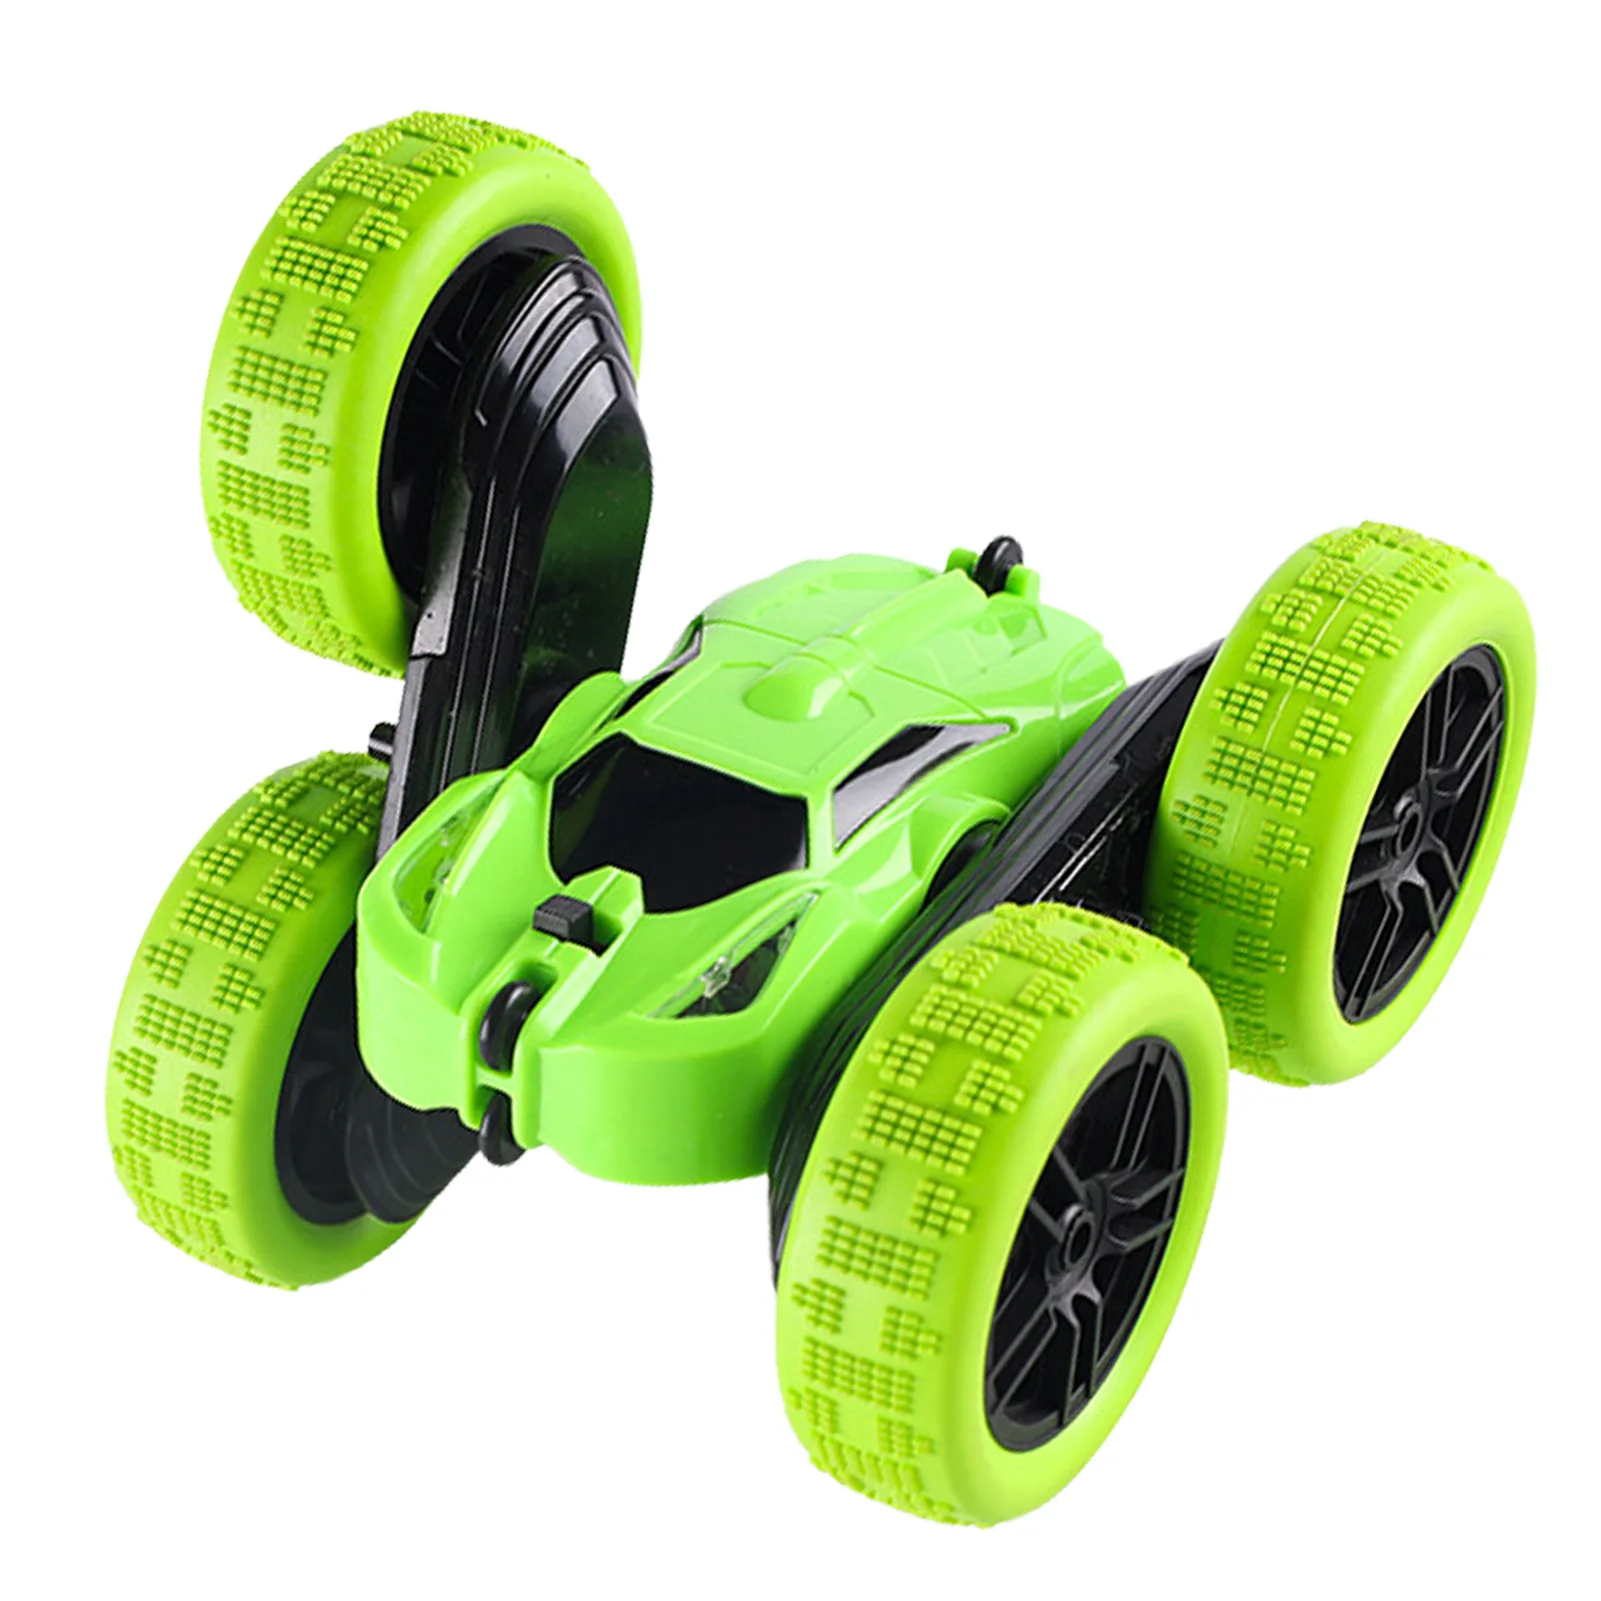 360° Spin RC Stunt Auto Ferngesteuertes Auto Stunt Auto für Kinder Gifts 2,4 GHz 